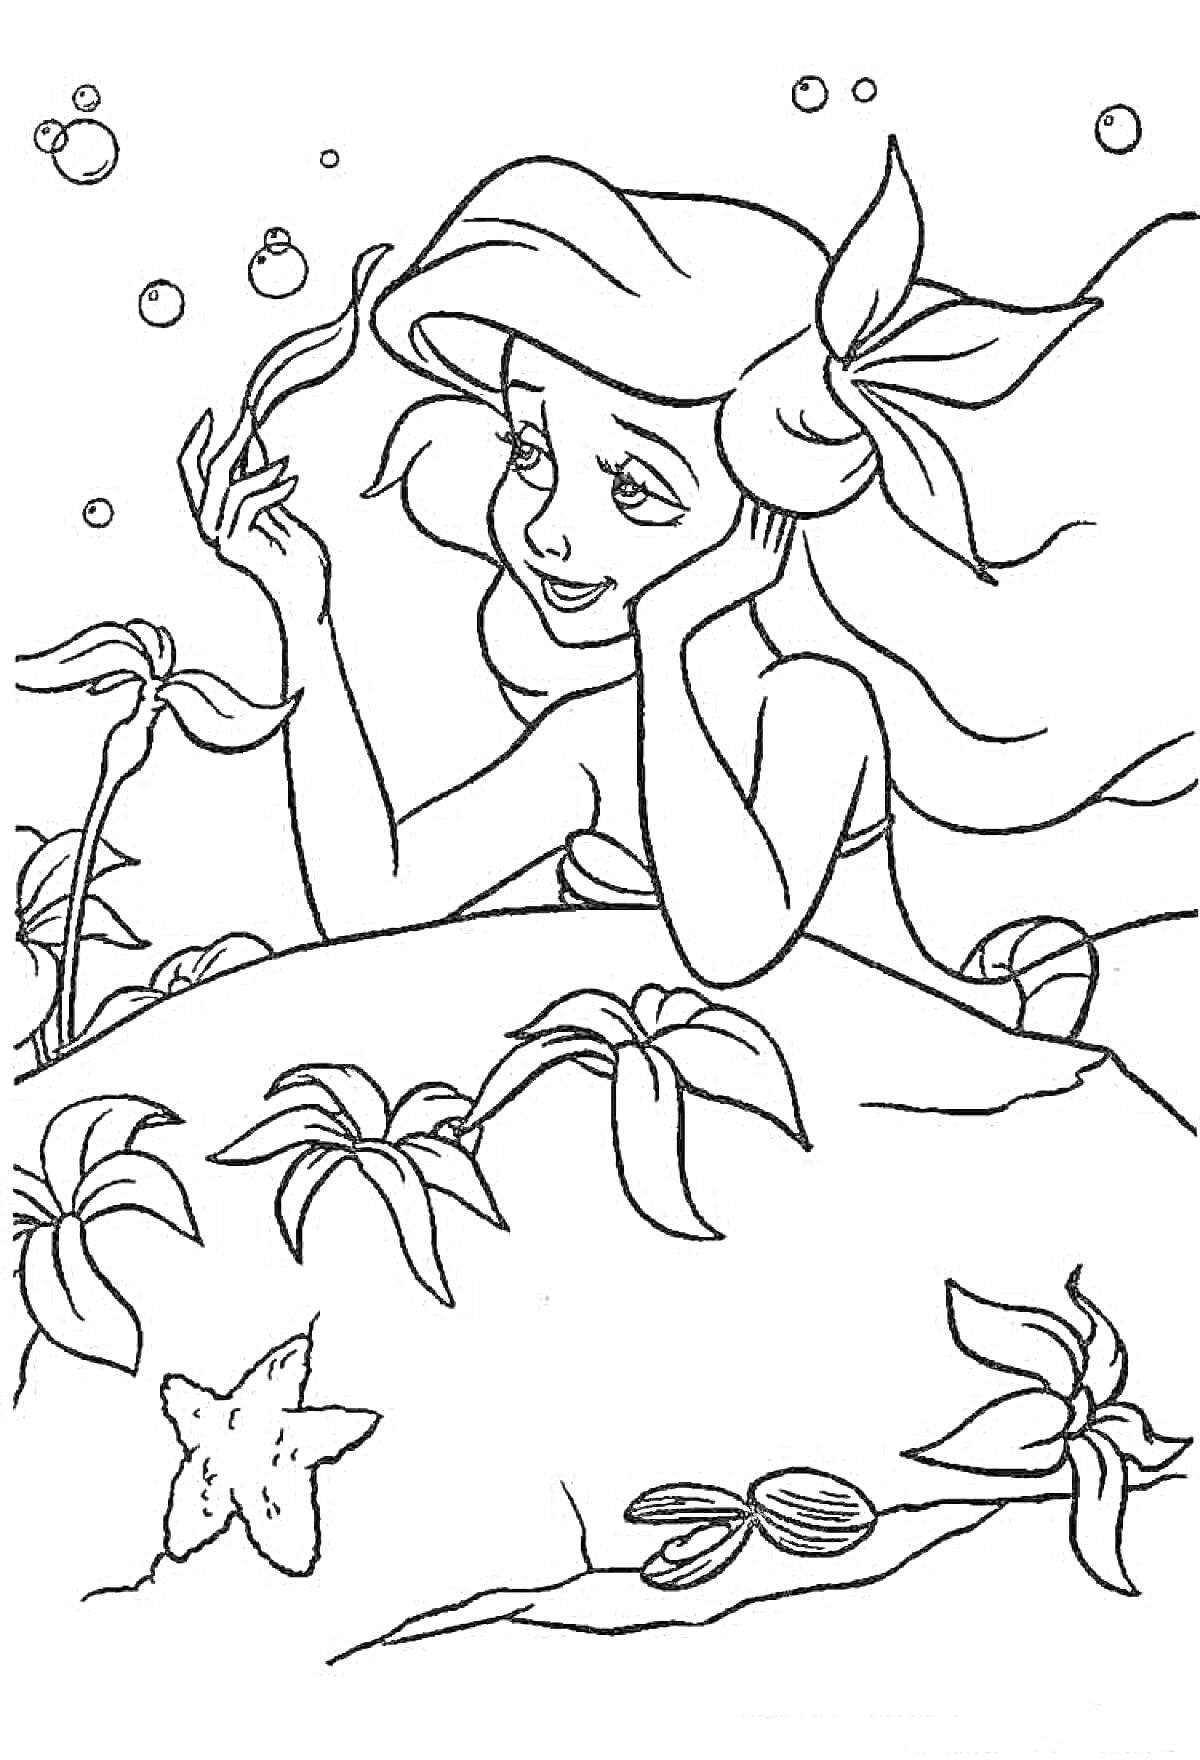  Ариэль русалочка с растениями, морскими звездами и ракушками под водой